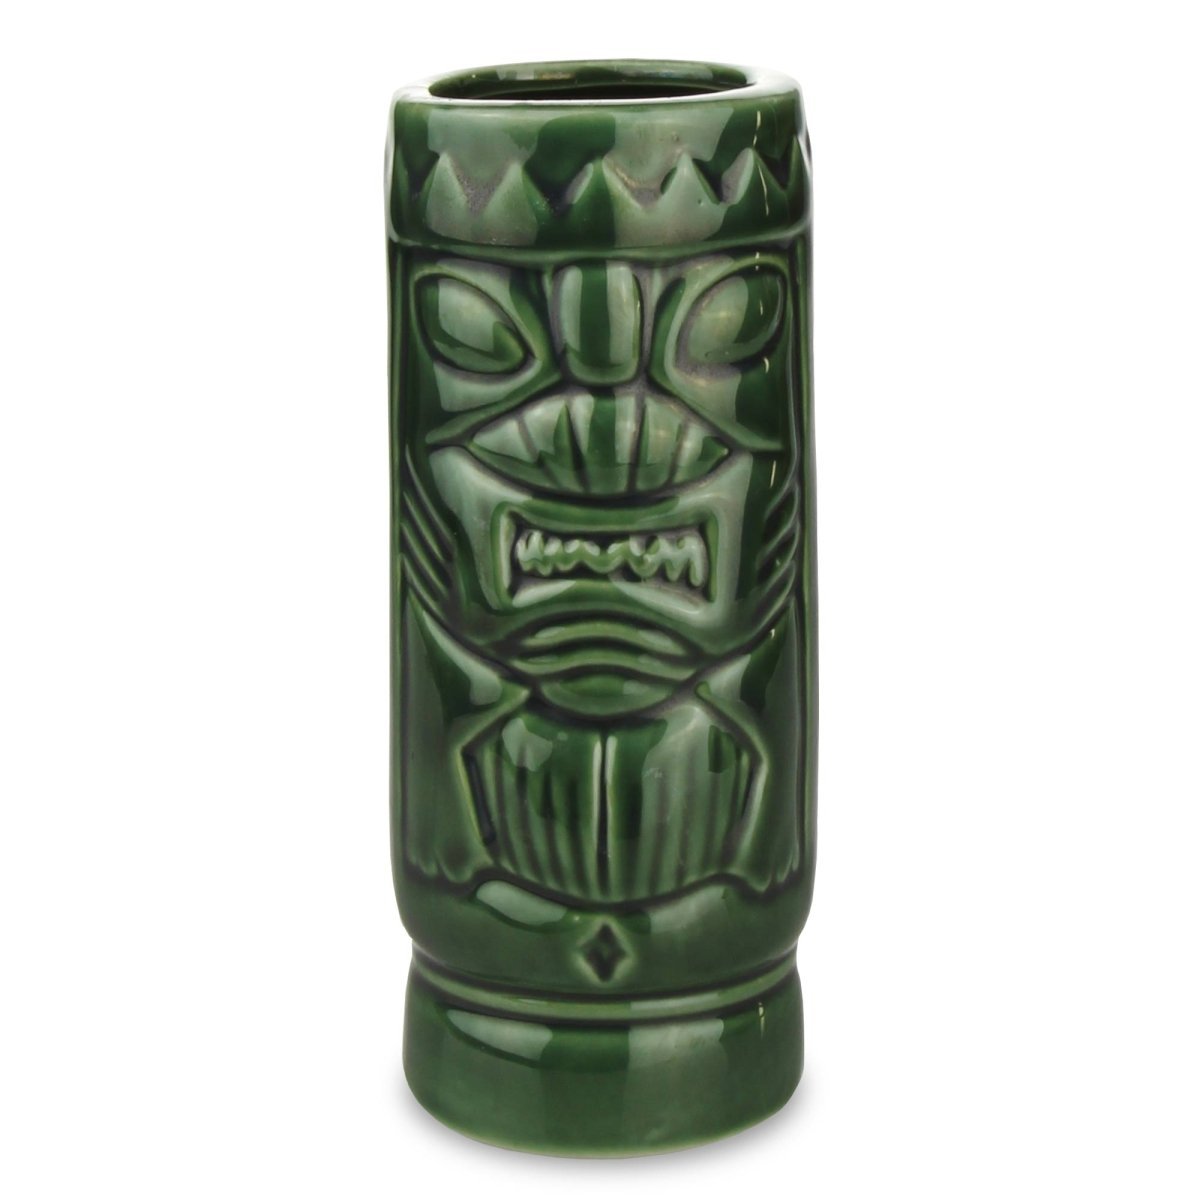 Ceramic Mean Green Tiki Mug 420ml 14oz - Easiley - TIKI0430-34